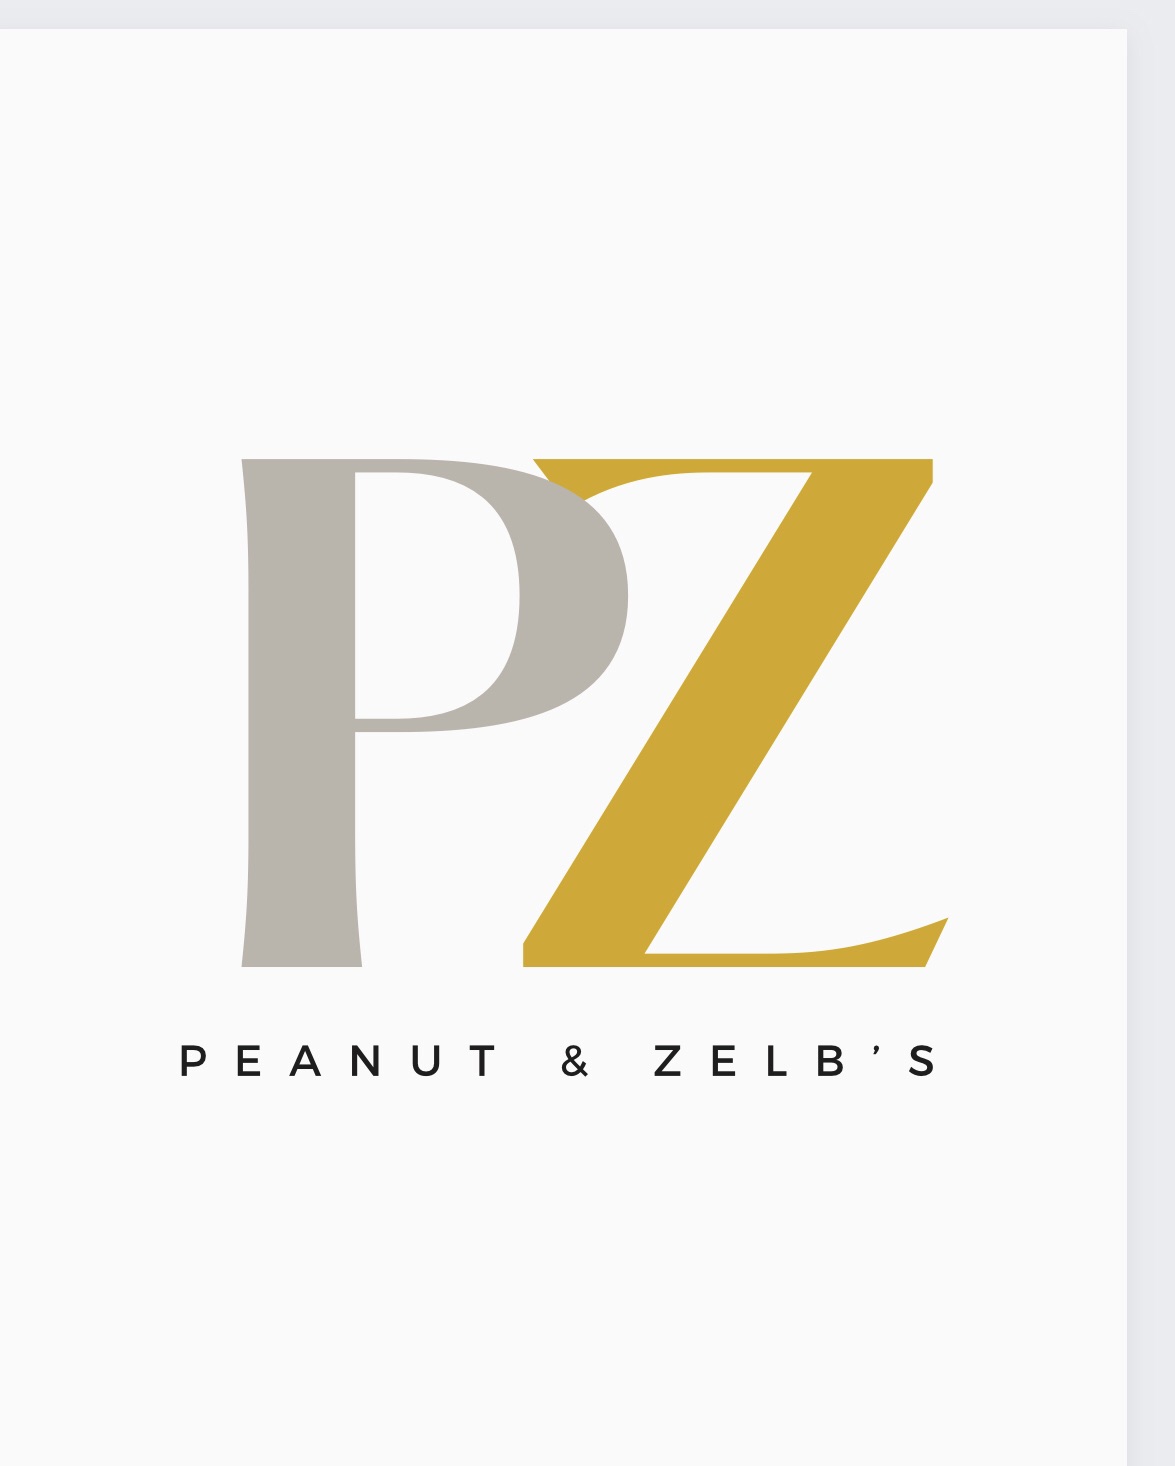 Peanut & Zelb's Produce